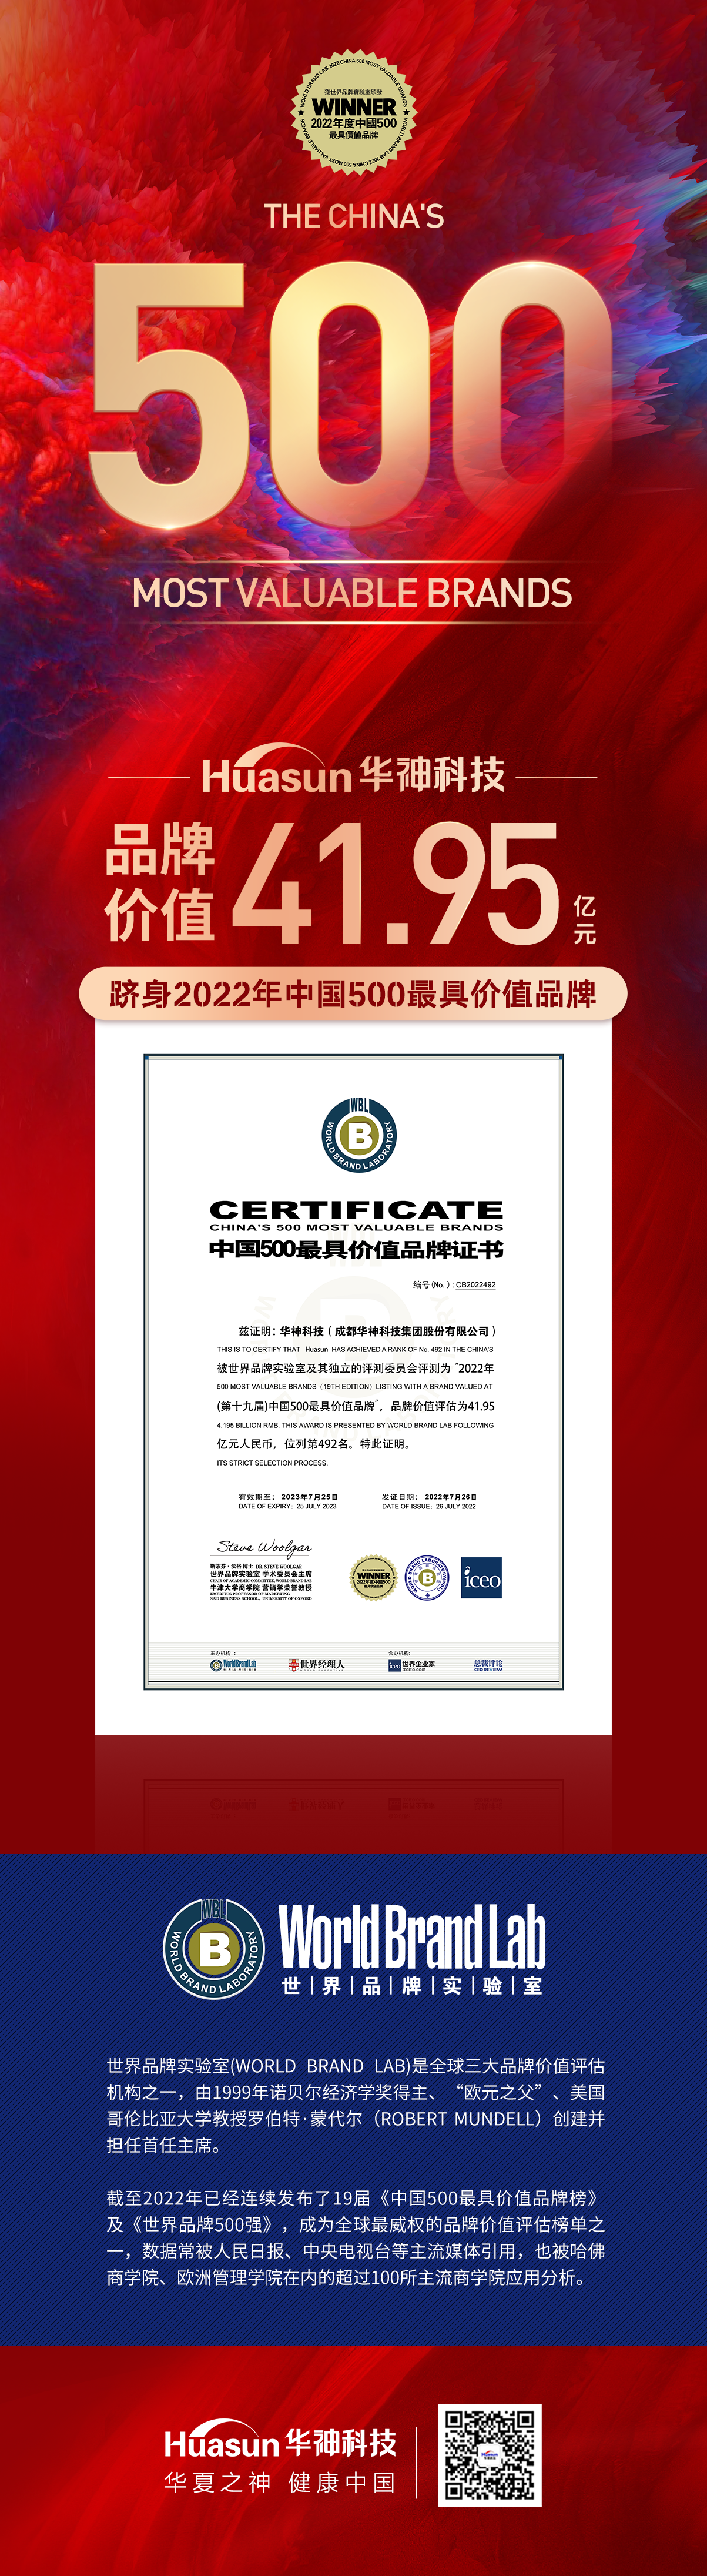 重磅 | 香港正牌挂牌官方网站首次荣膺中国500最具价值品牌 品牌价值达41.95亿